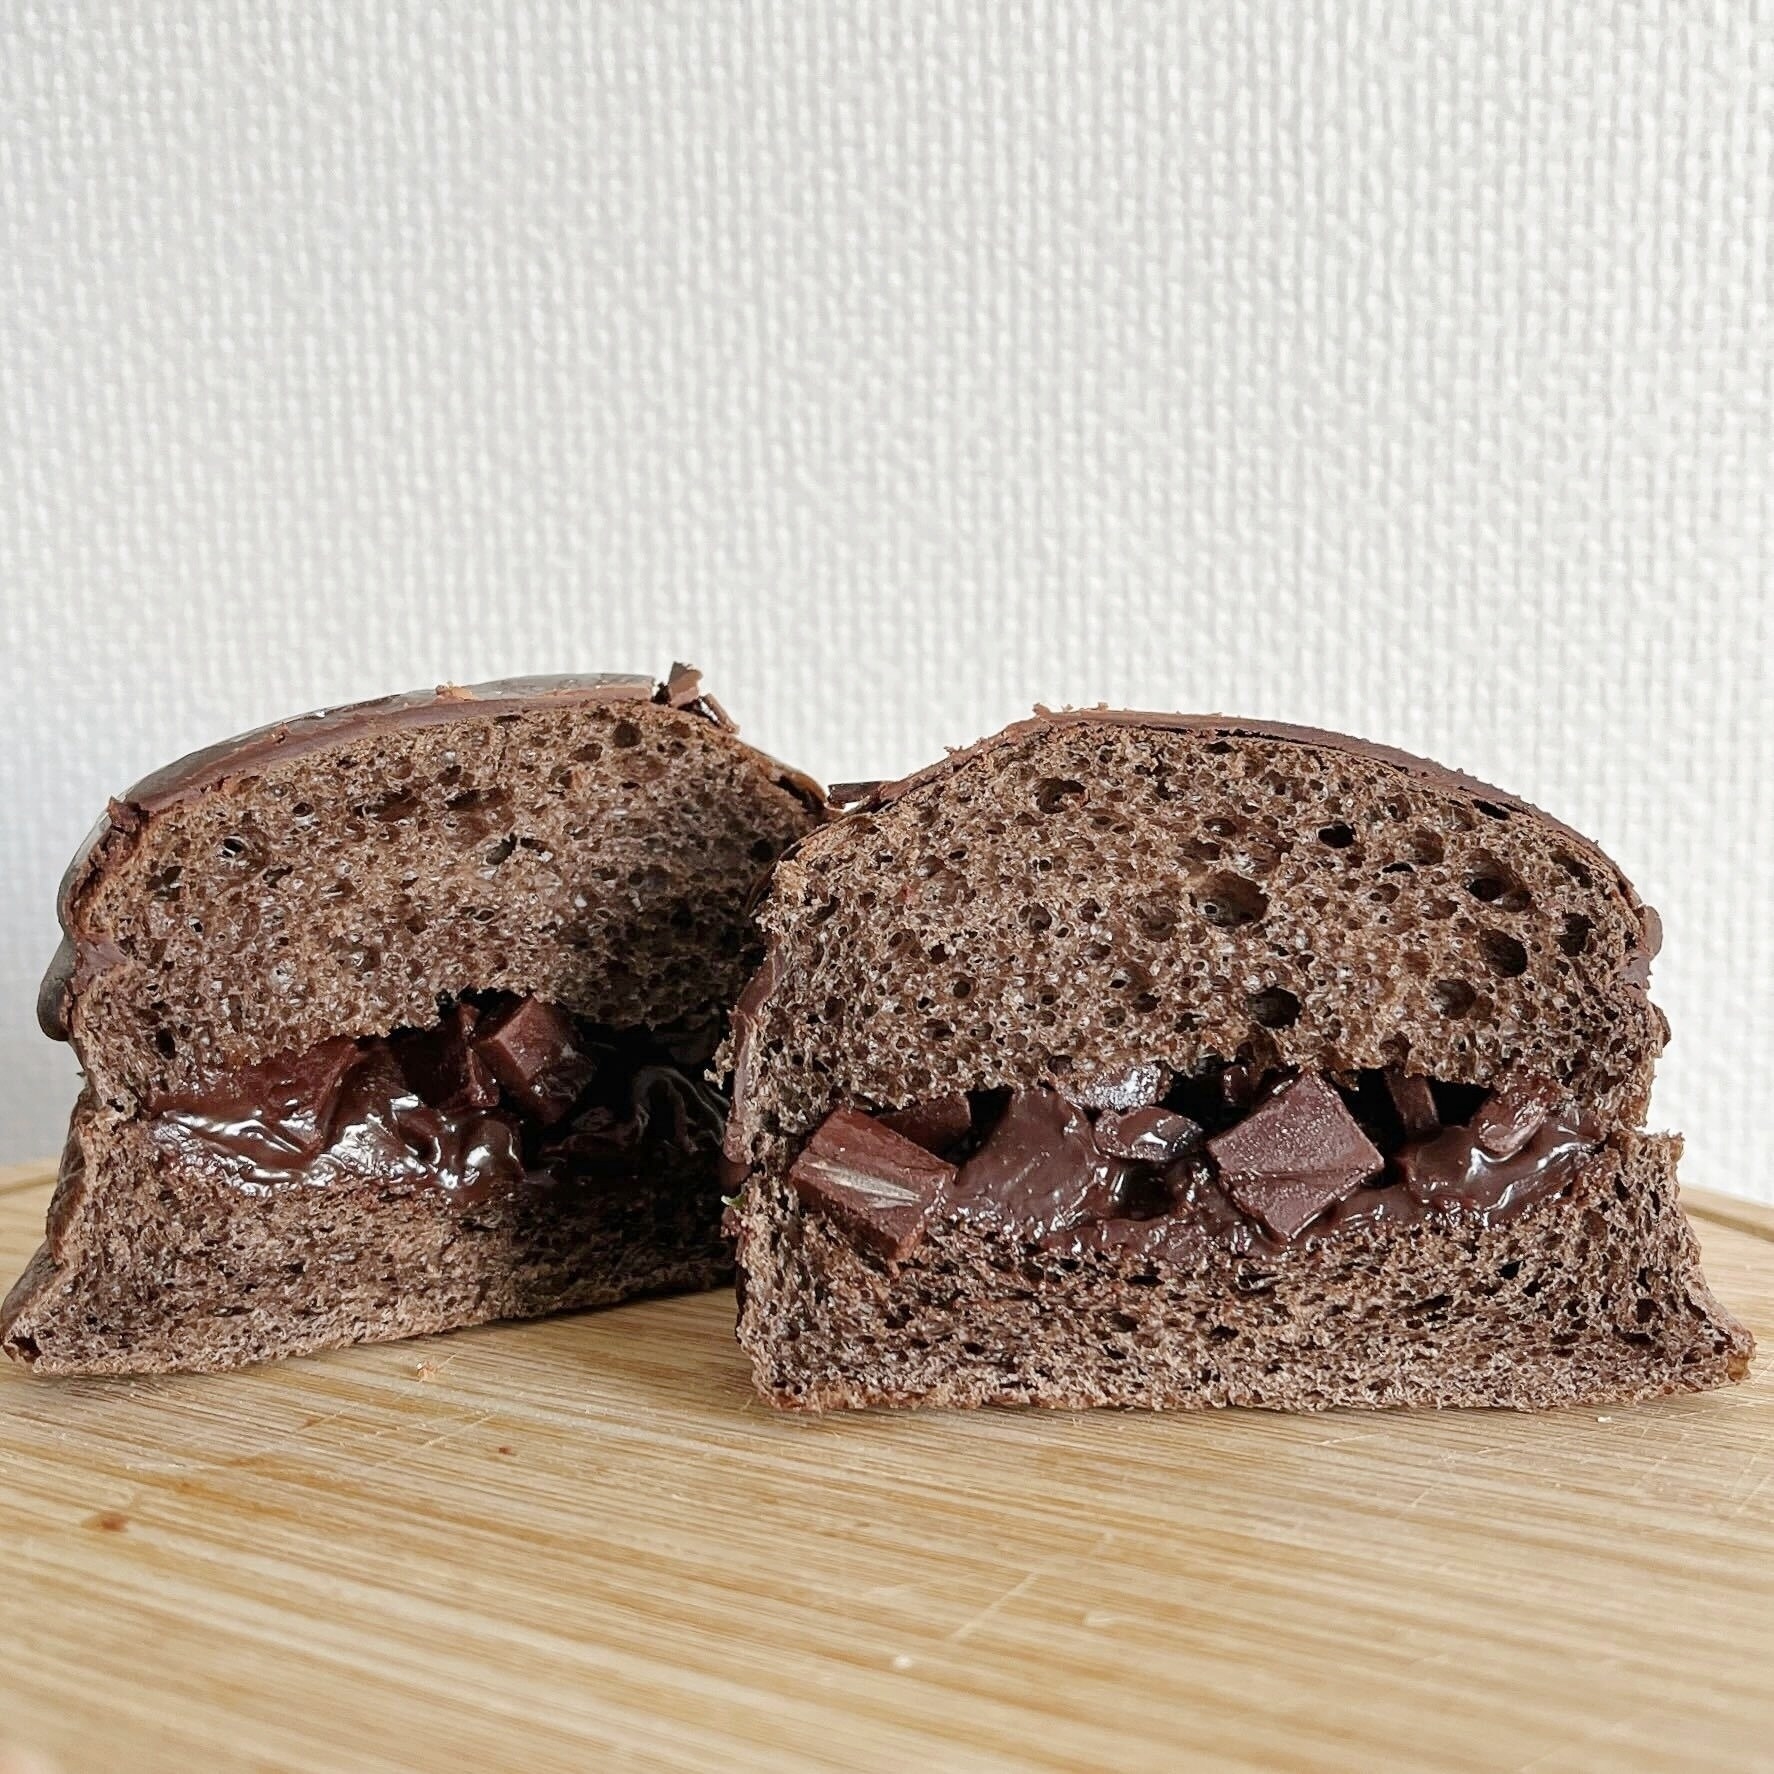 LAWSON（ローソン）のオススメのパン「GODIVA ショコラドーム」